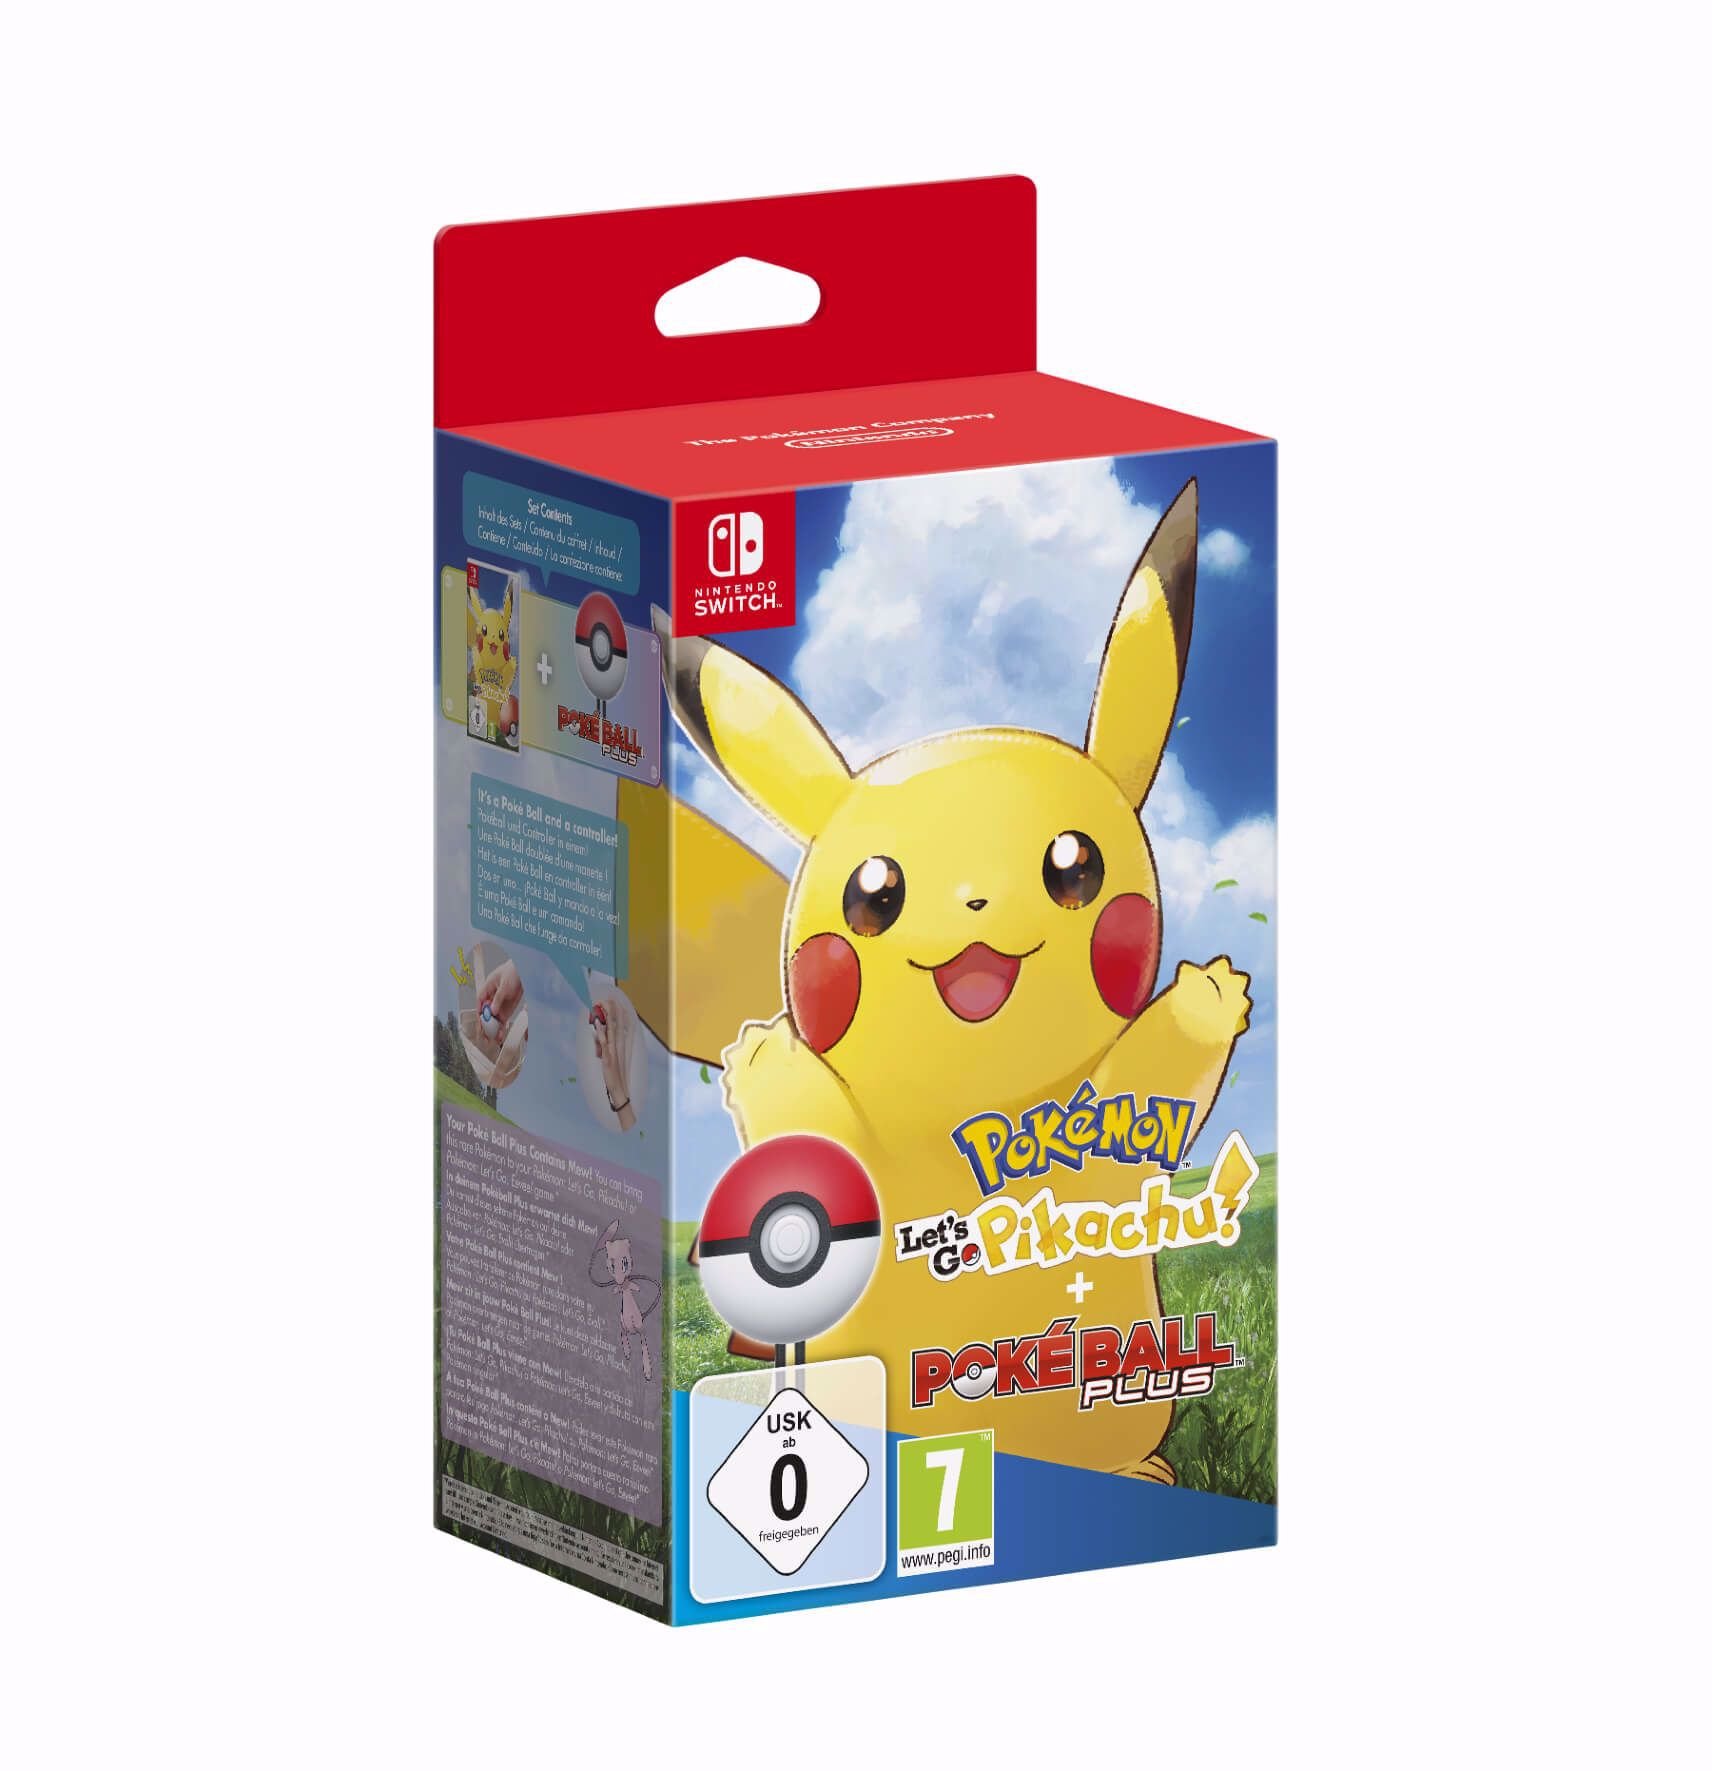 Pokemon Letâs Go Pikachu + PokeBall Plus Switch